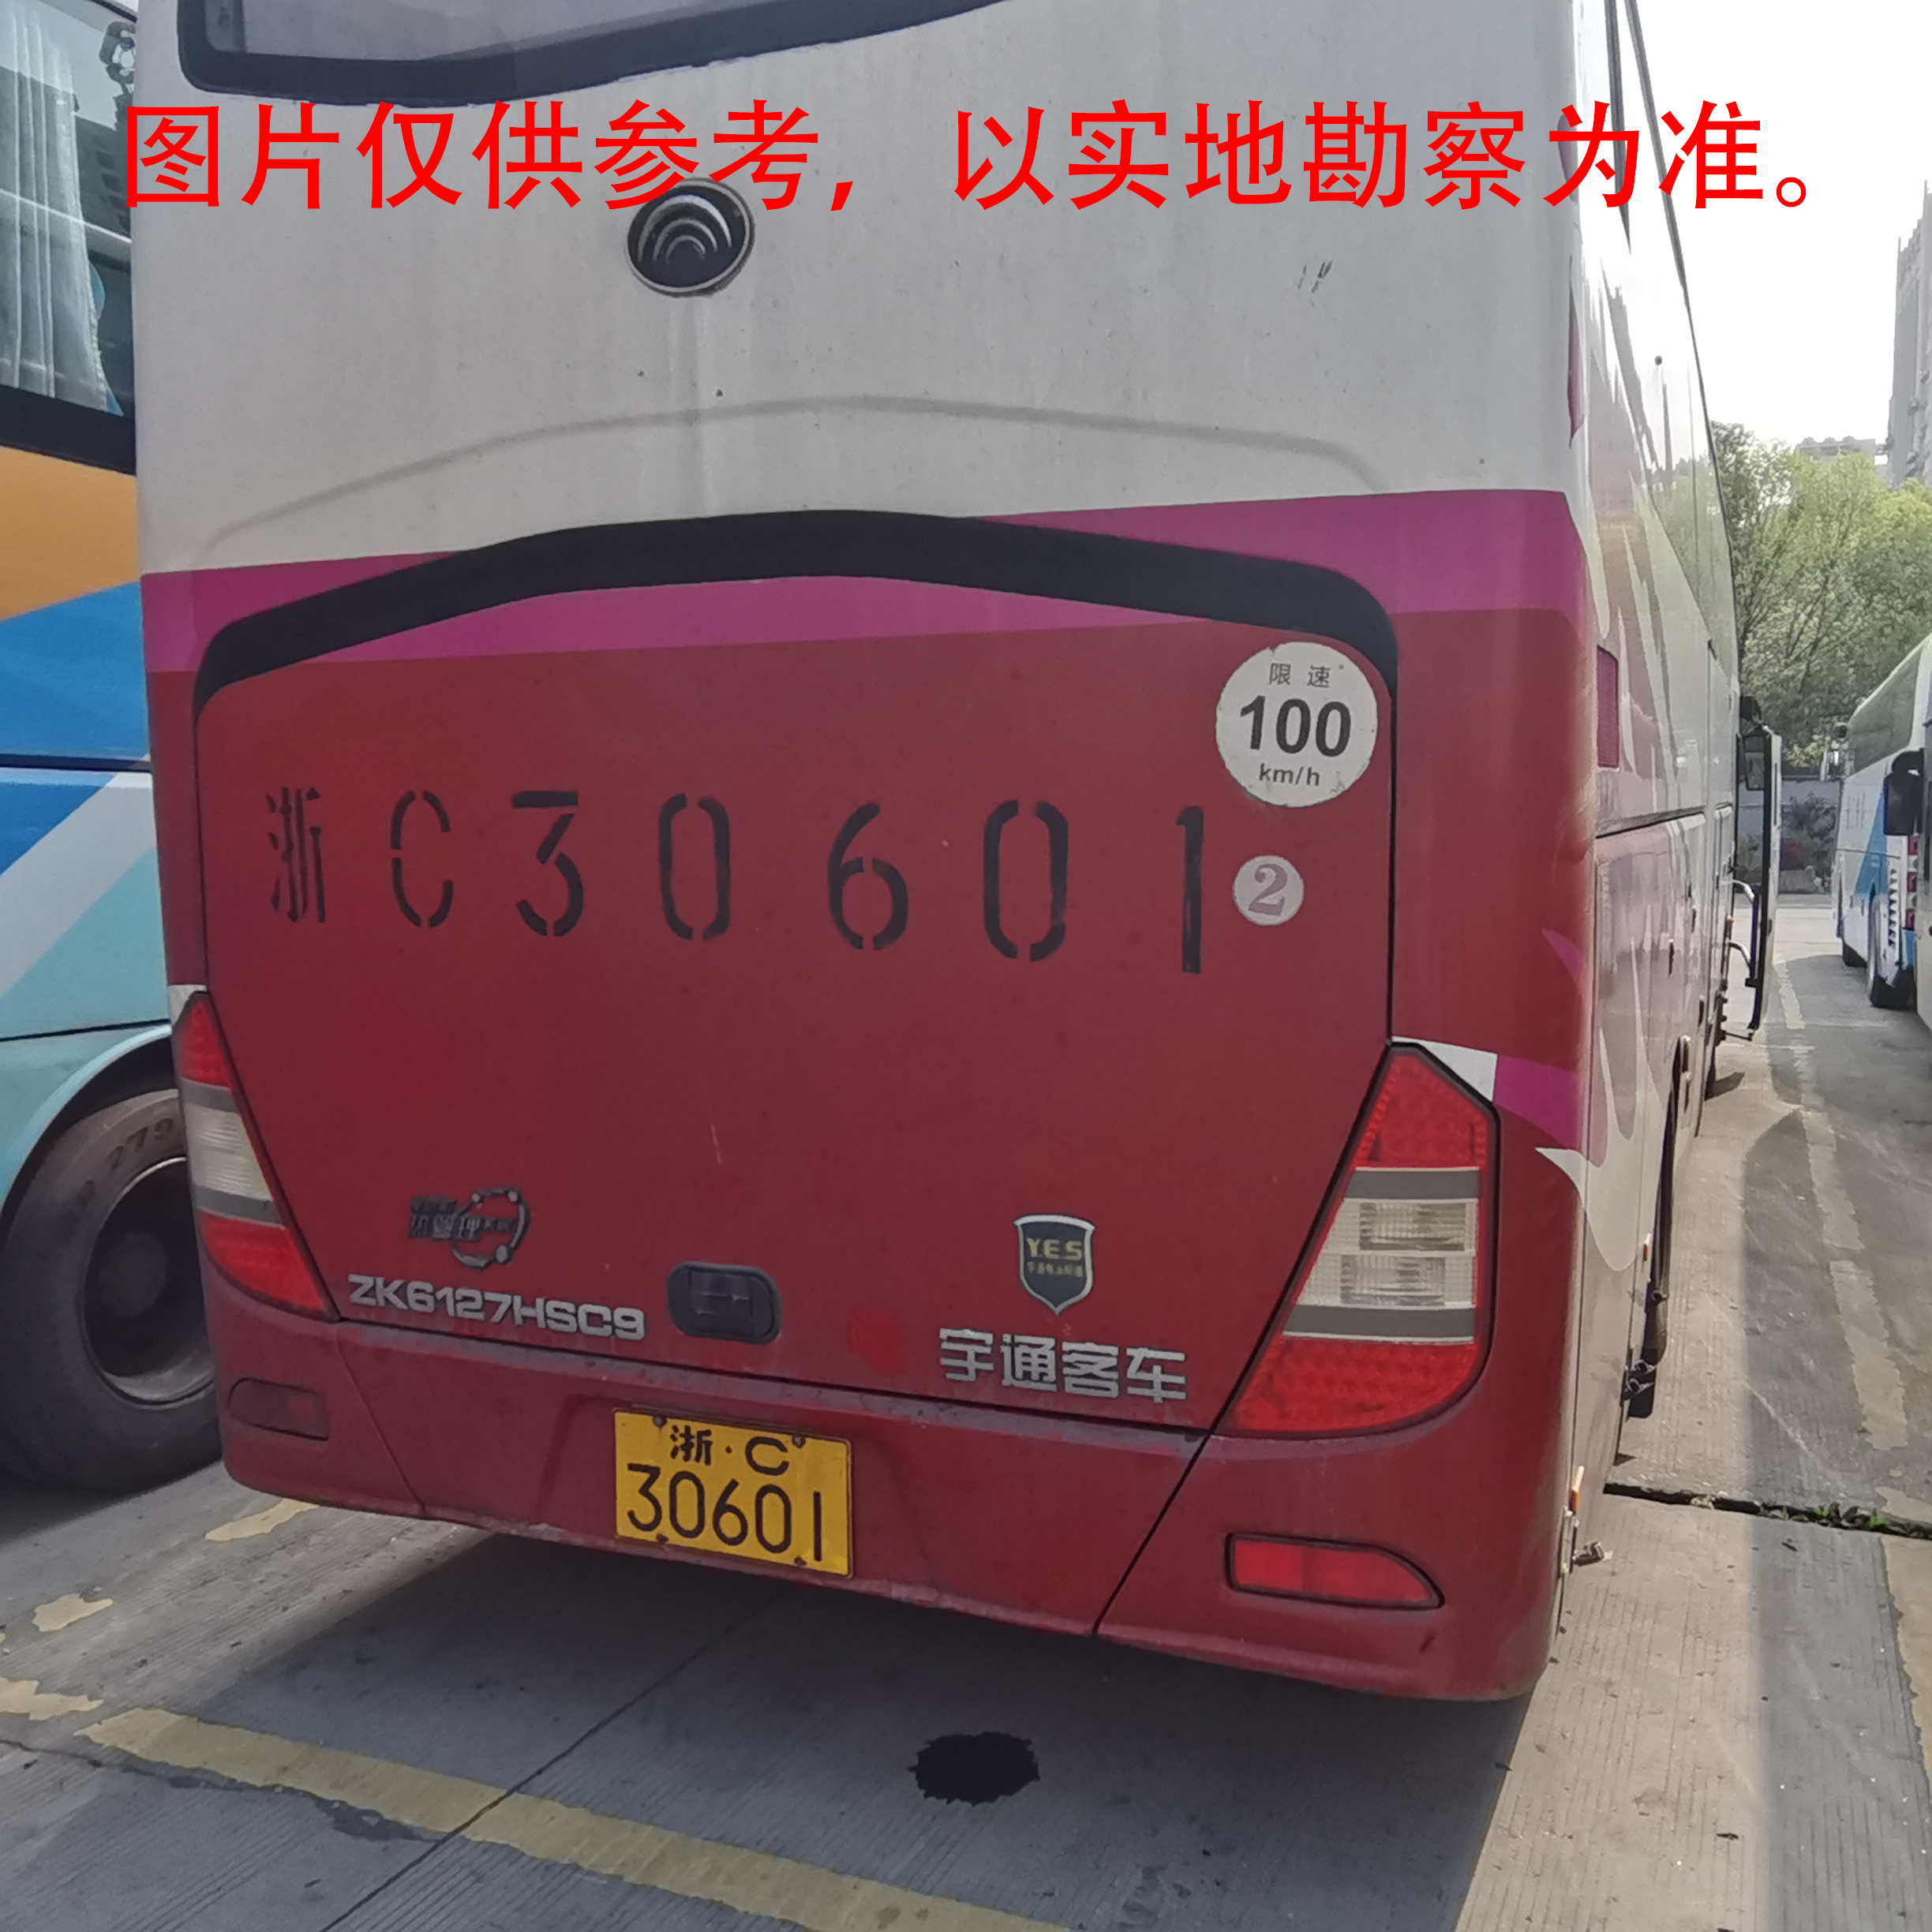 浙C30601宇通牌大型普通客车转让出售招标